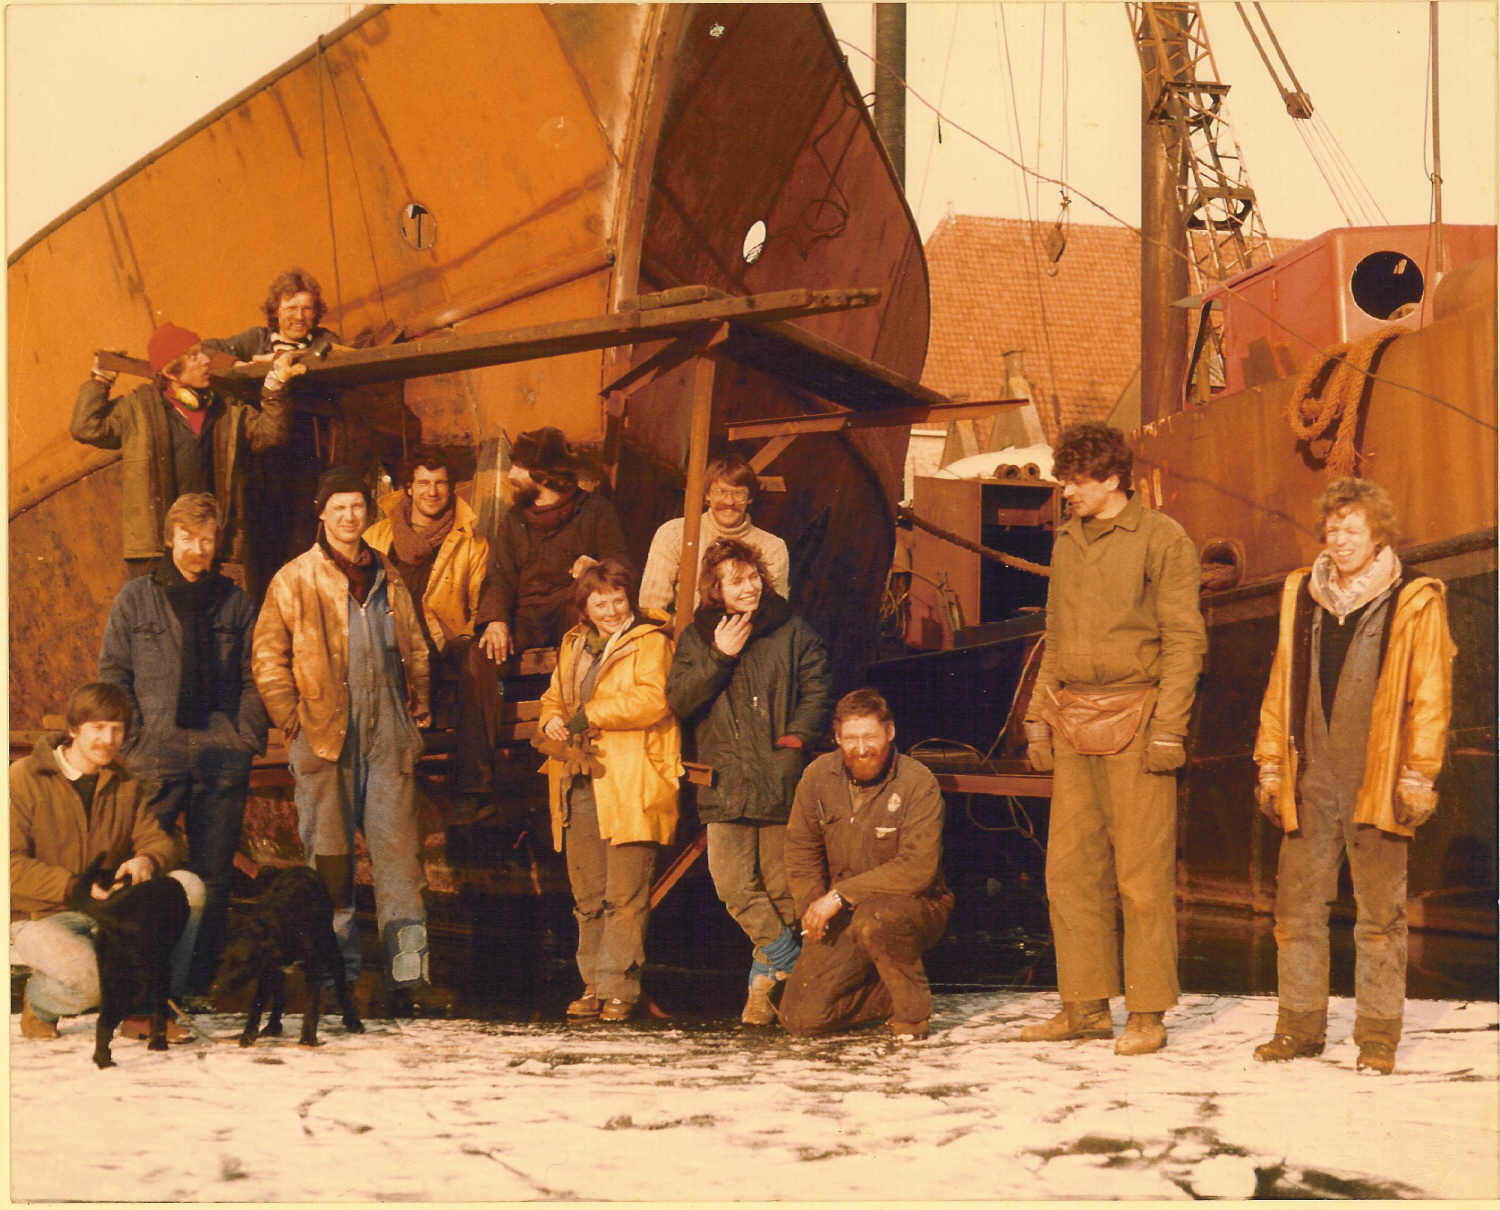 Oosterhaven 1985